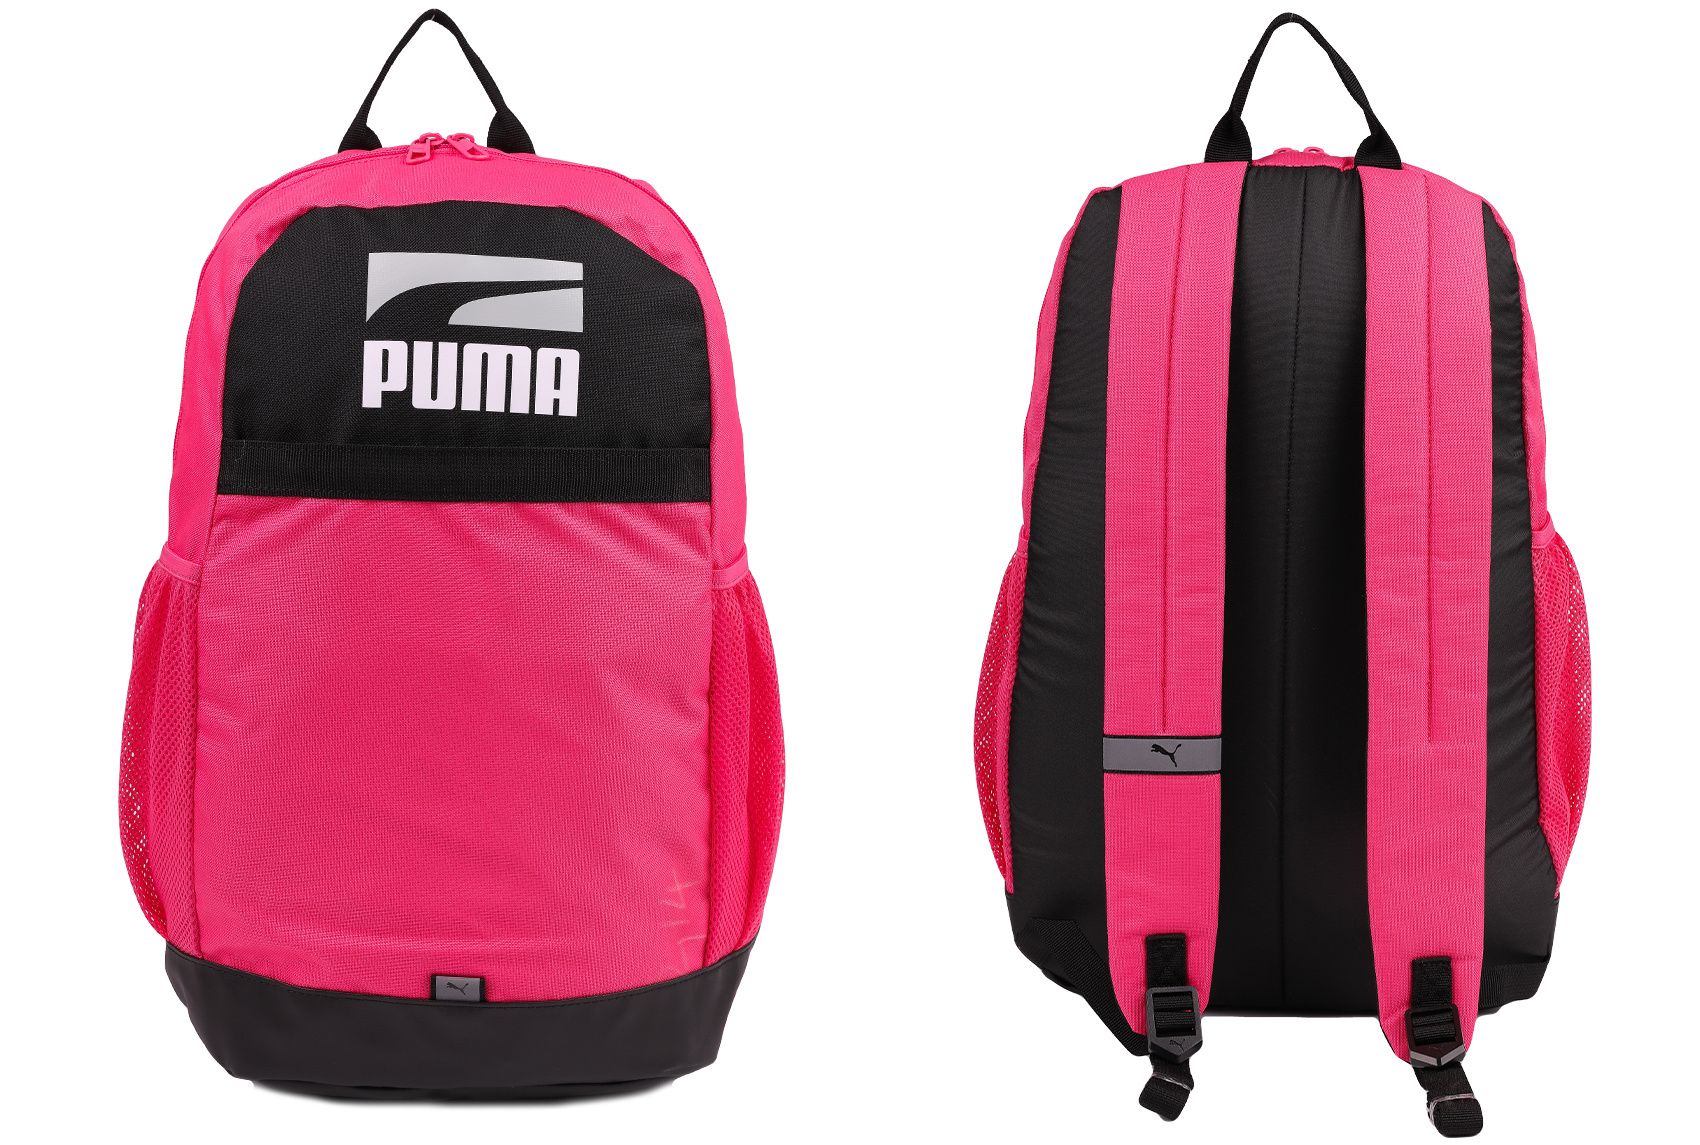 Plus 11 PUMA 78391 Rucksack Backpack II